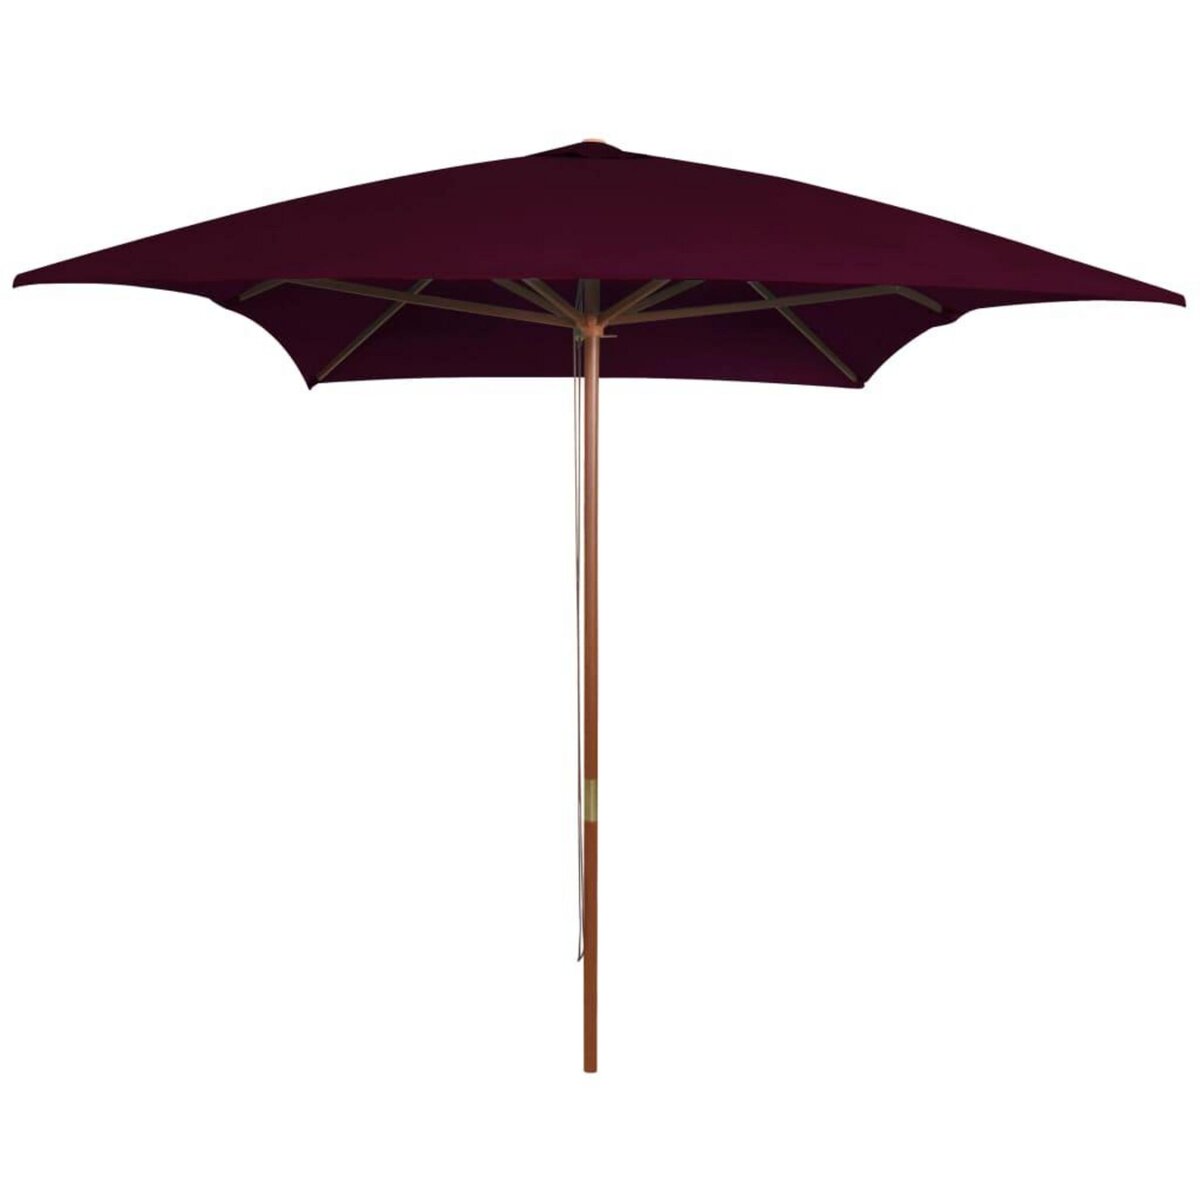 VIDAXL Parasol d'exterieur avec mat en bois Rouge bordeaux 200x300 cm